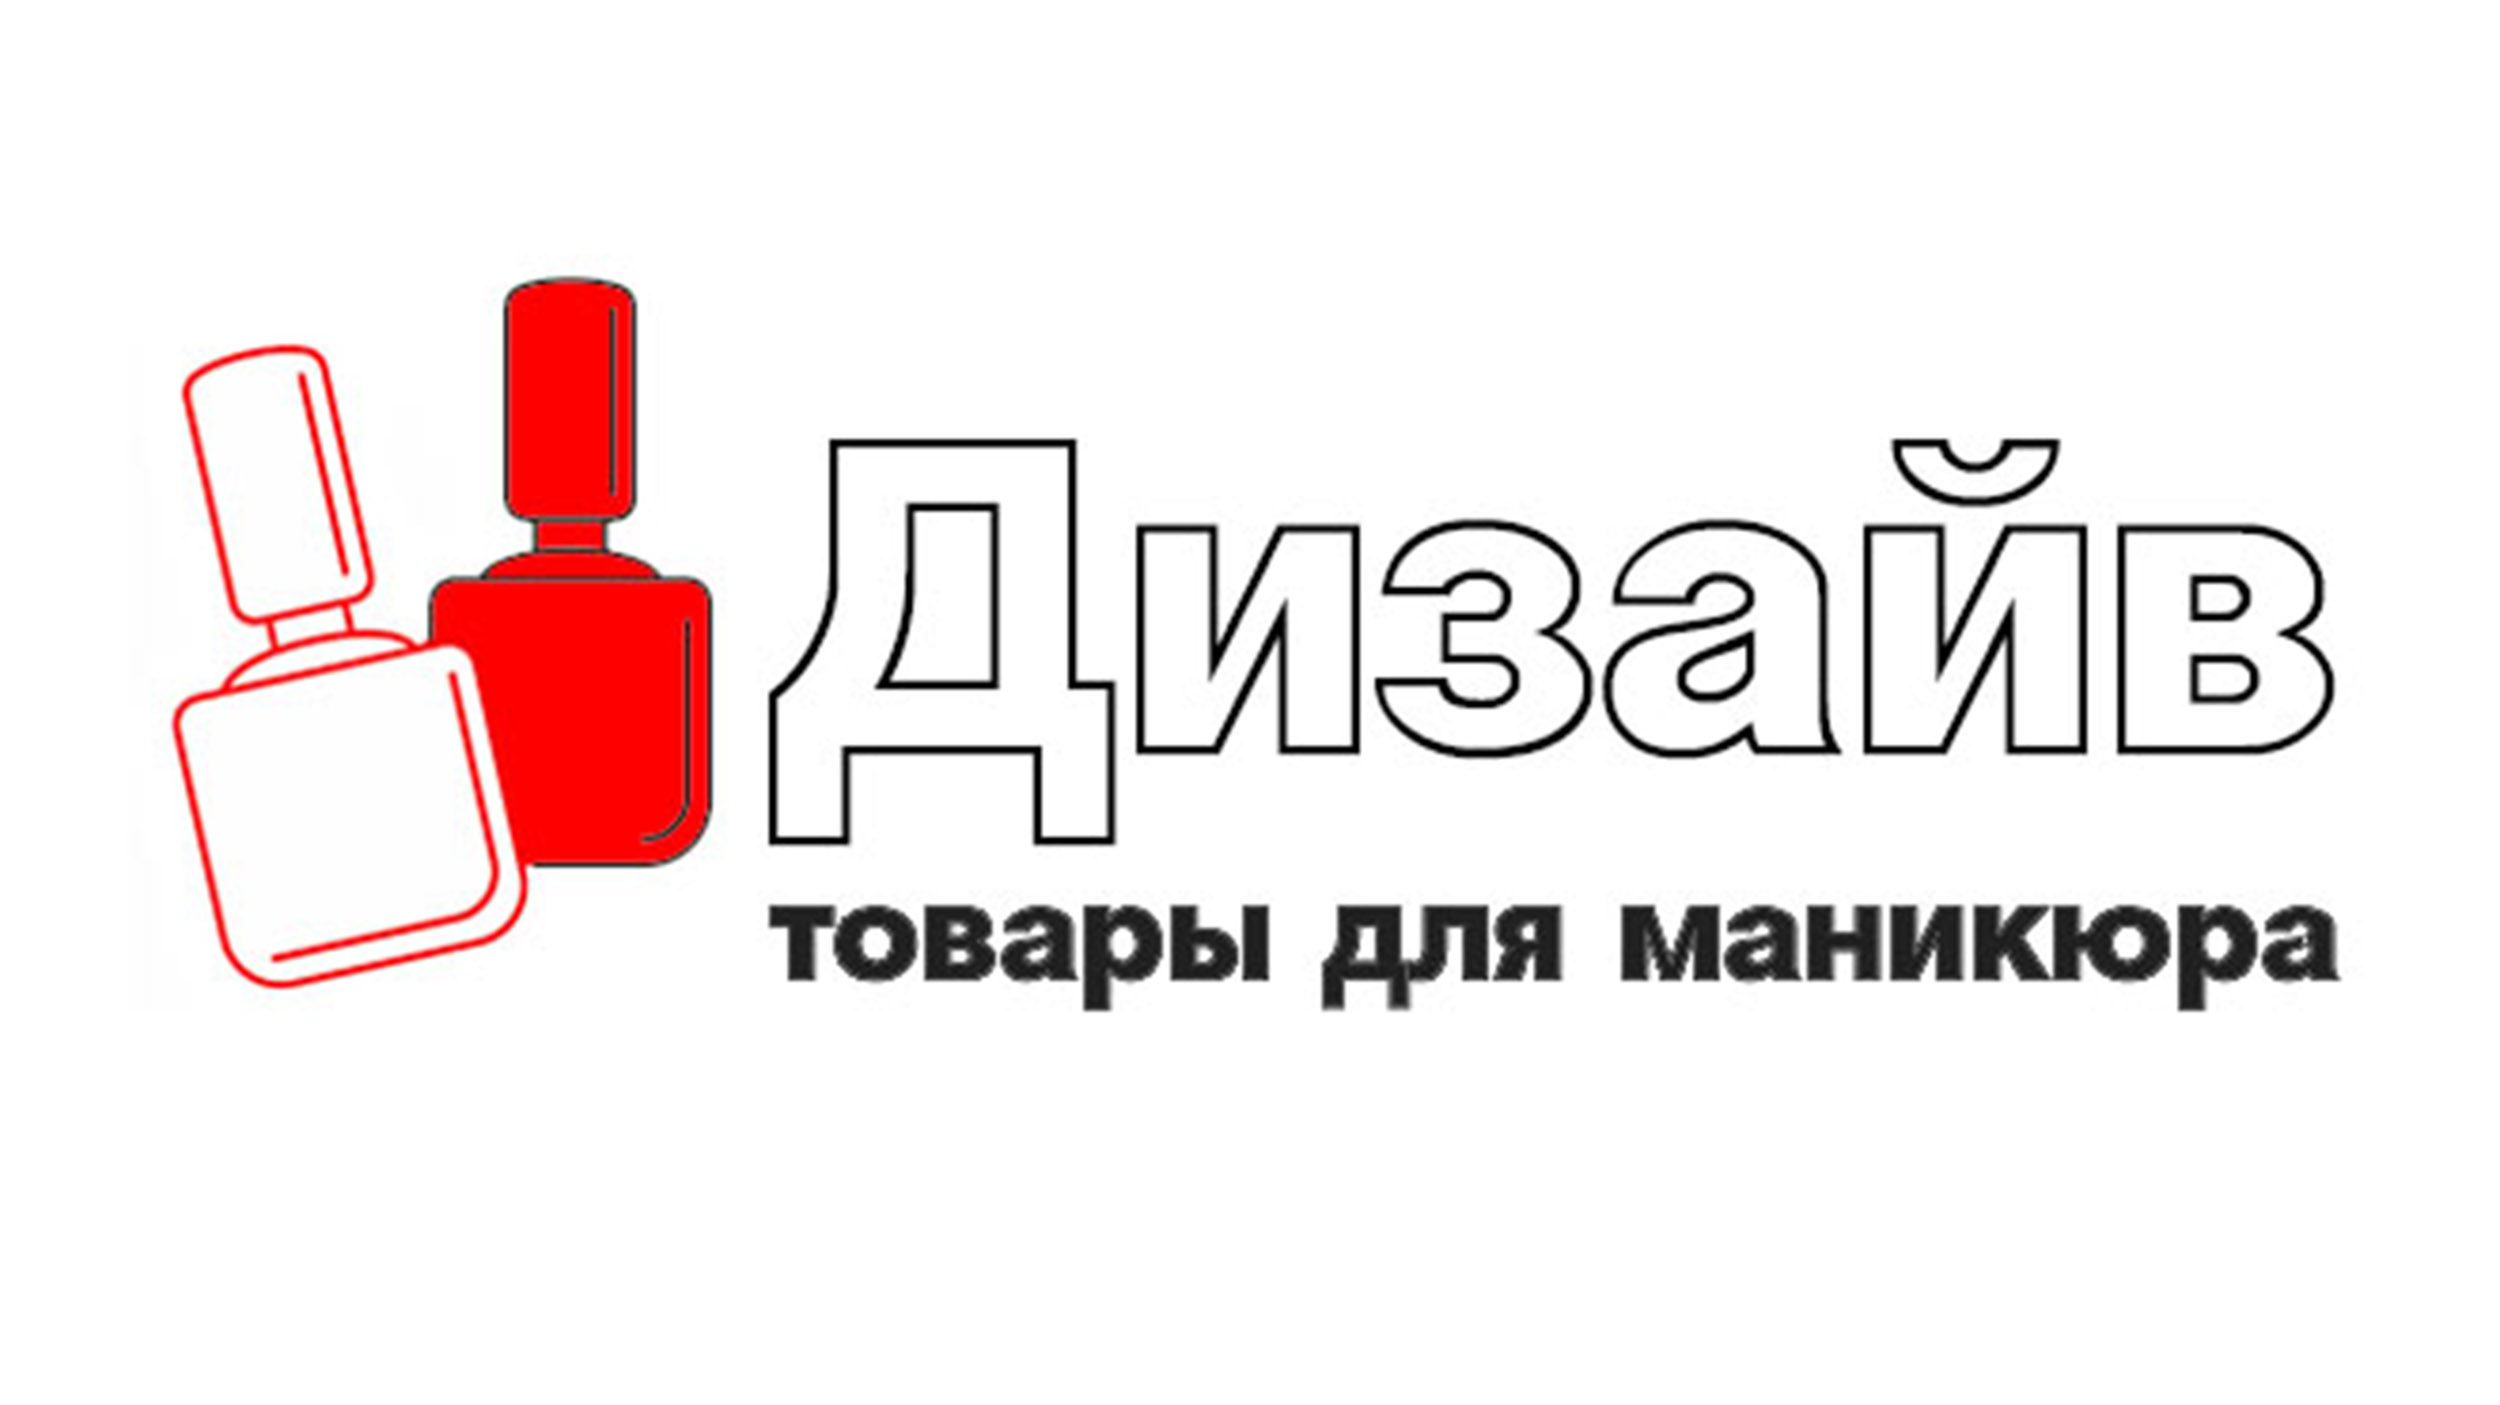 Интернет-магазин EMI в Ростове-на-Дону